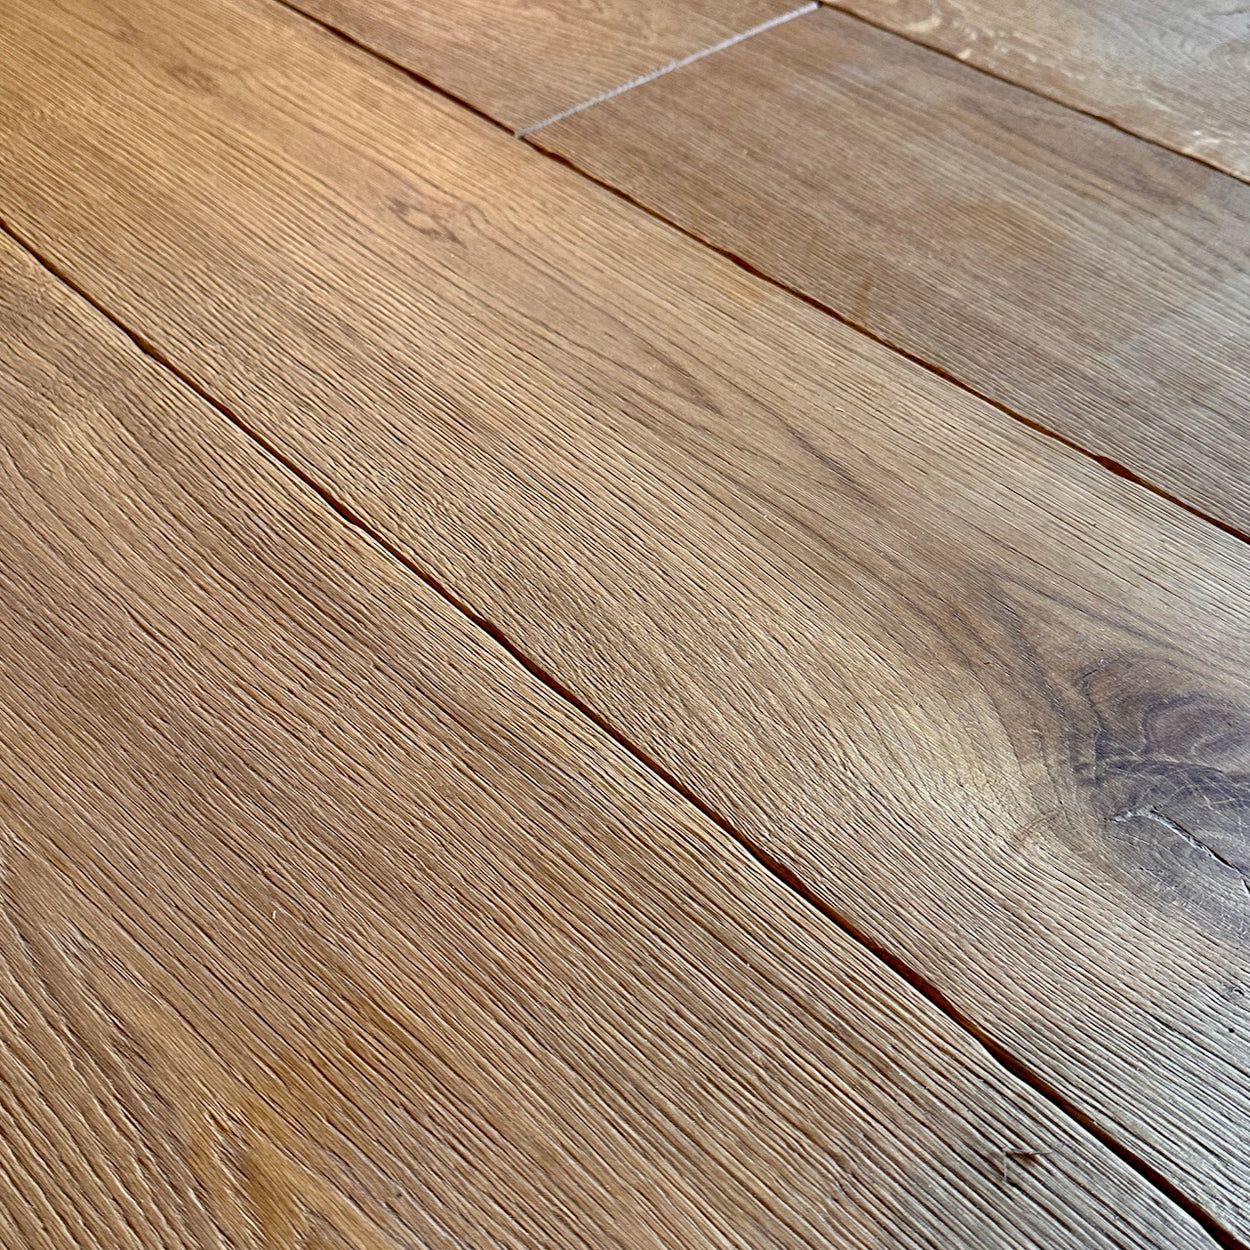 Highland Oak Flooring